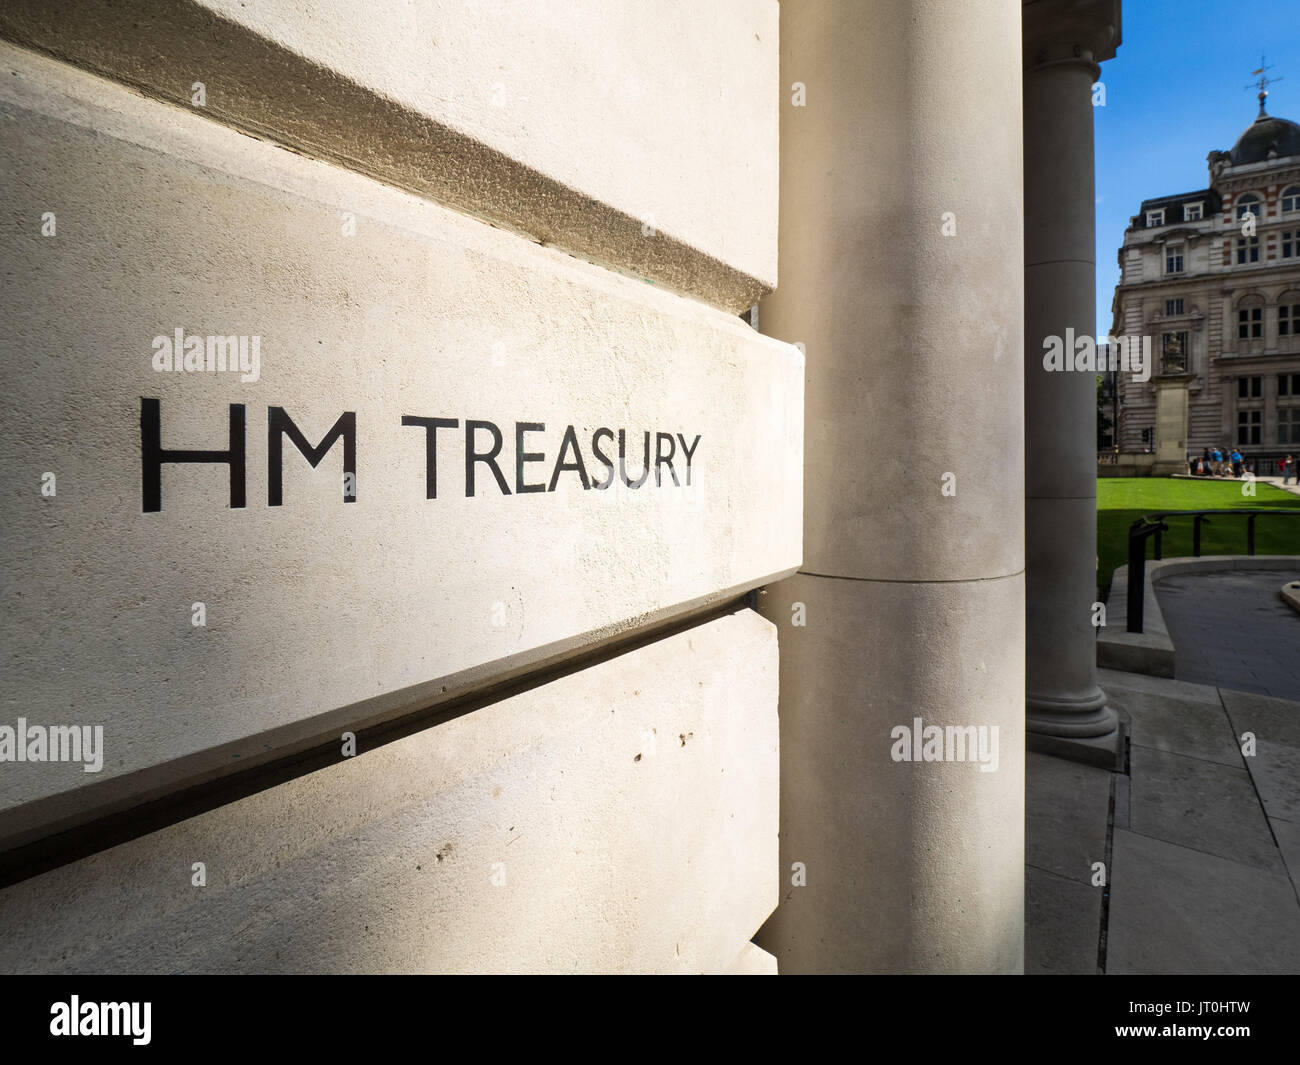 HM Treasury Office in Horse Guards Rd, Westminster, Londra, Regno Unito. Il Tesoro è il ministero delle finanze, controlla e coordina la spesa del governo britannico Foto Stock